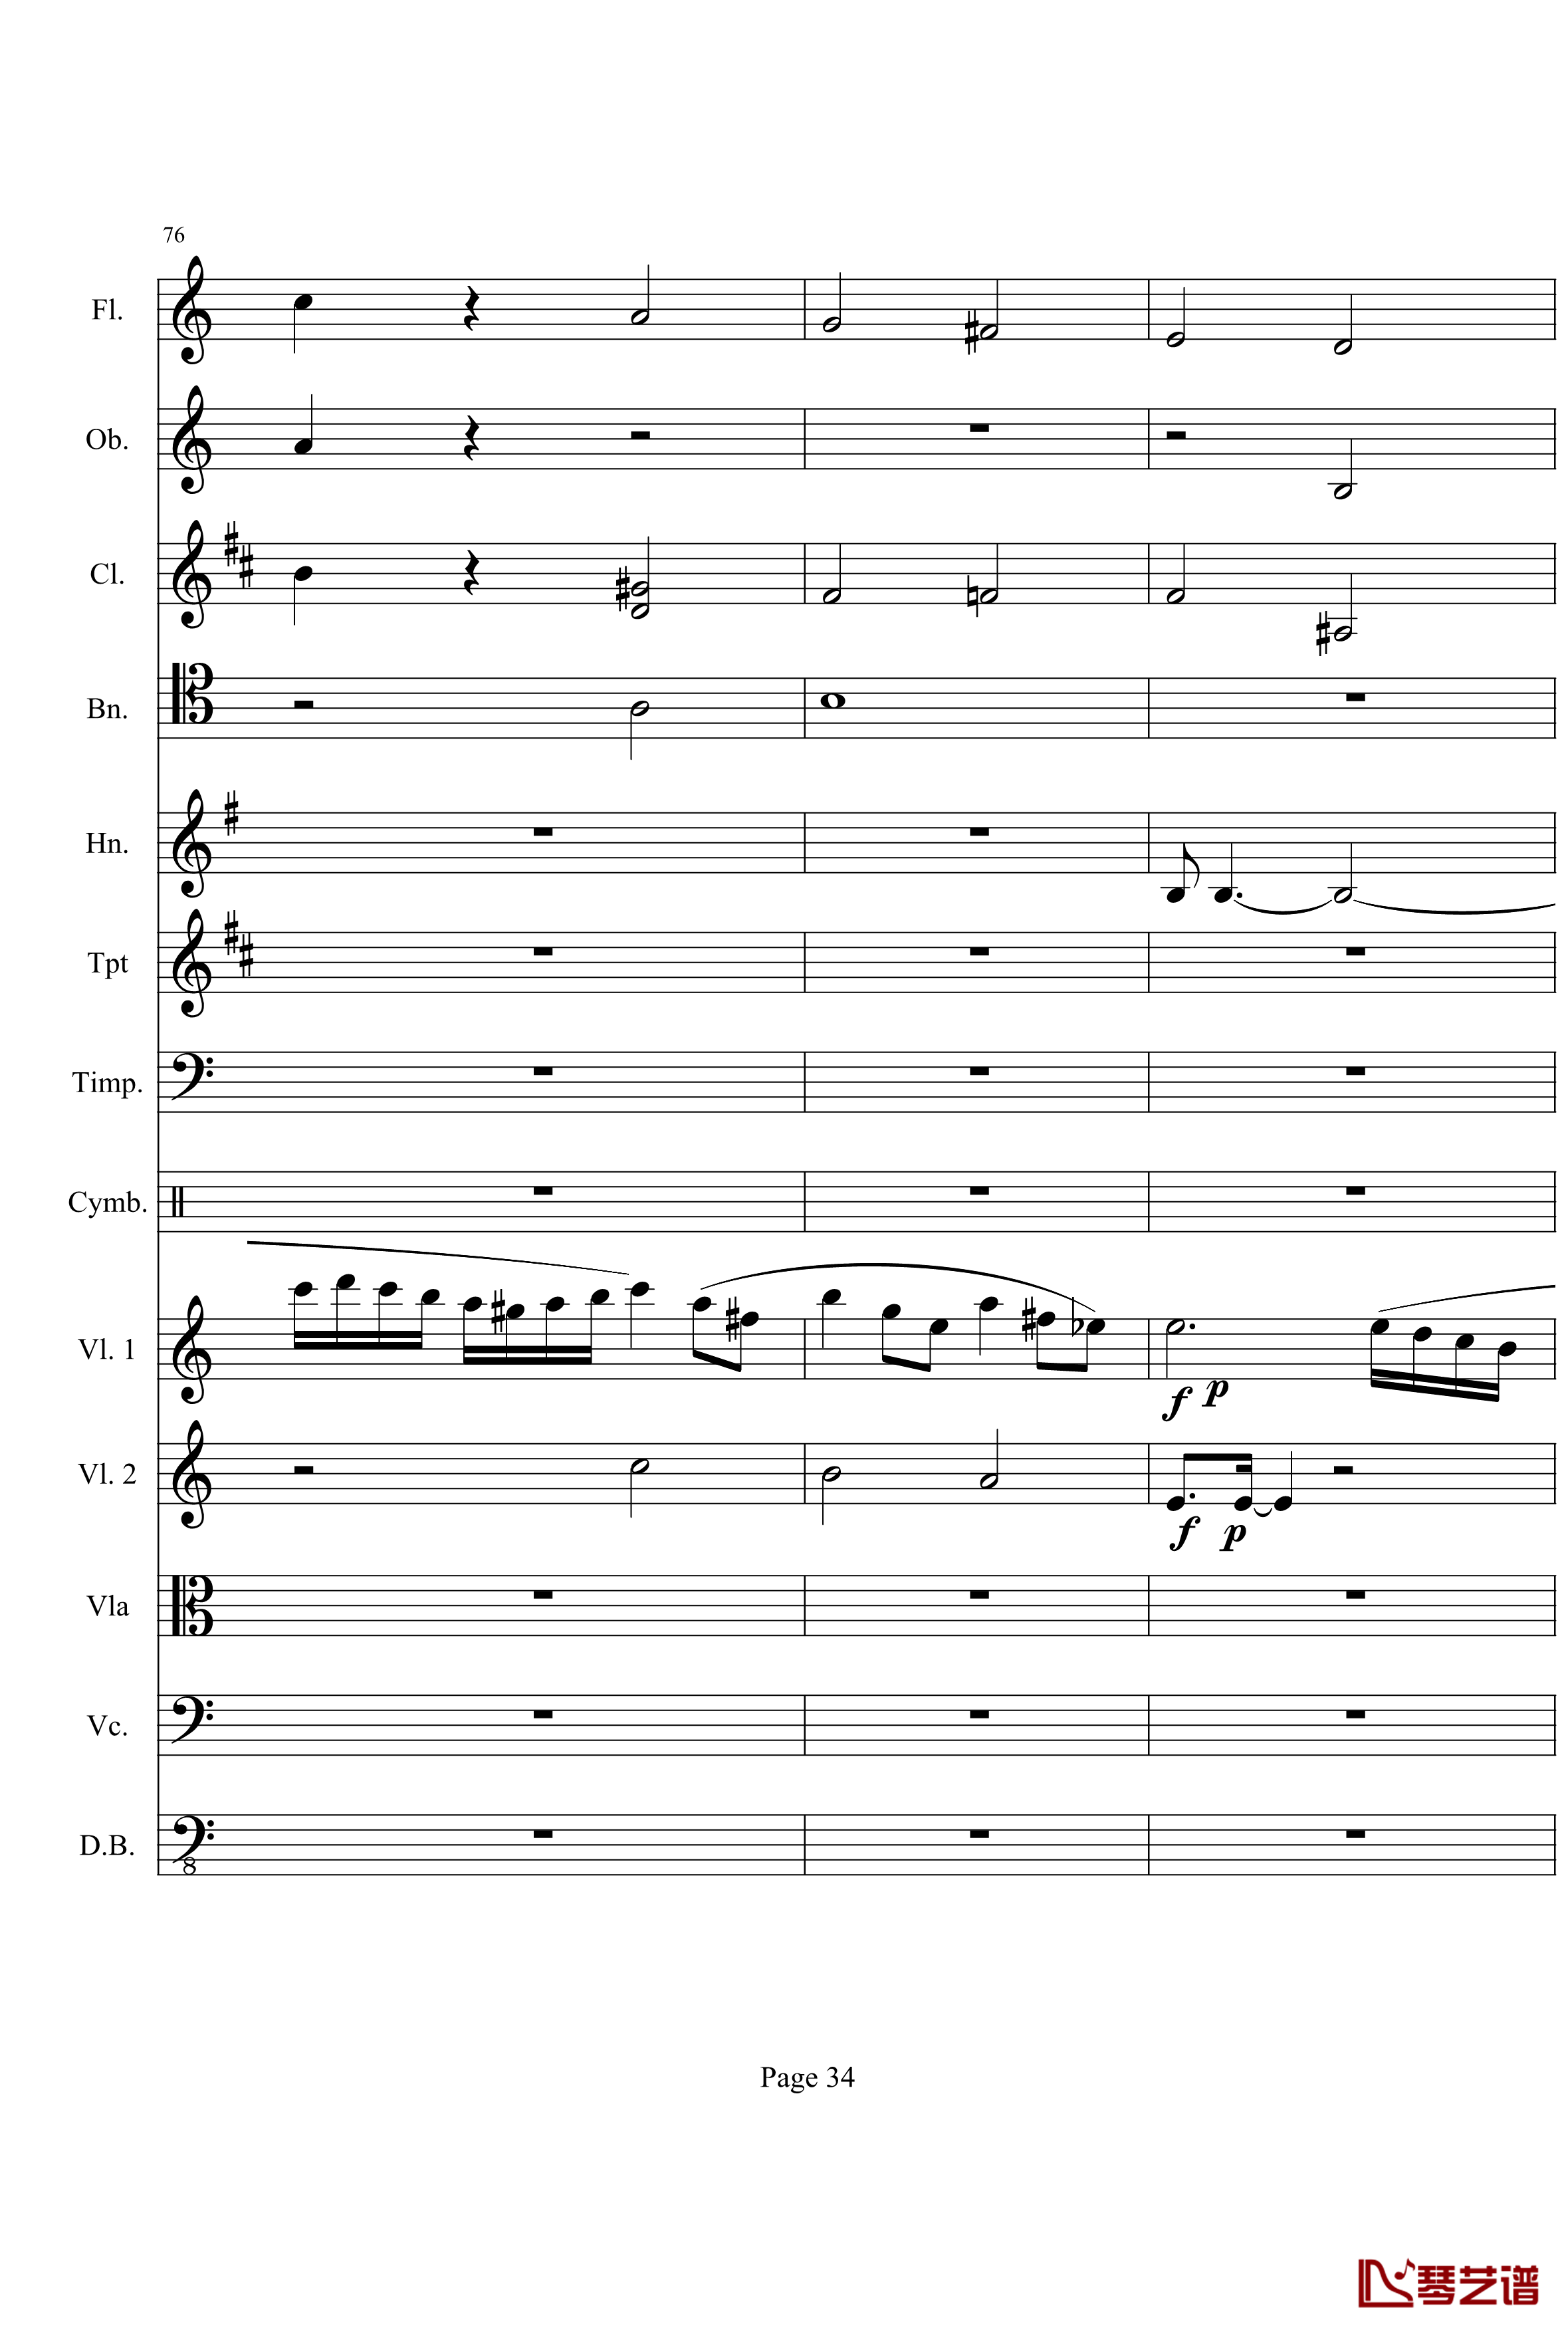 奏鸣曲之交响钢琴谱-第21首-Ⅰ-贝多芬-beethoven34